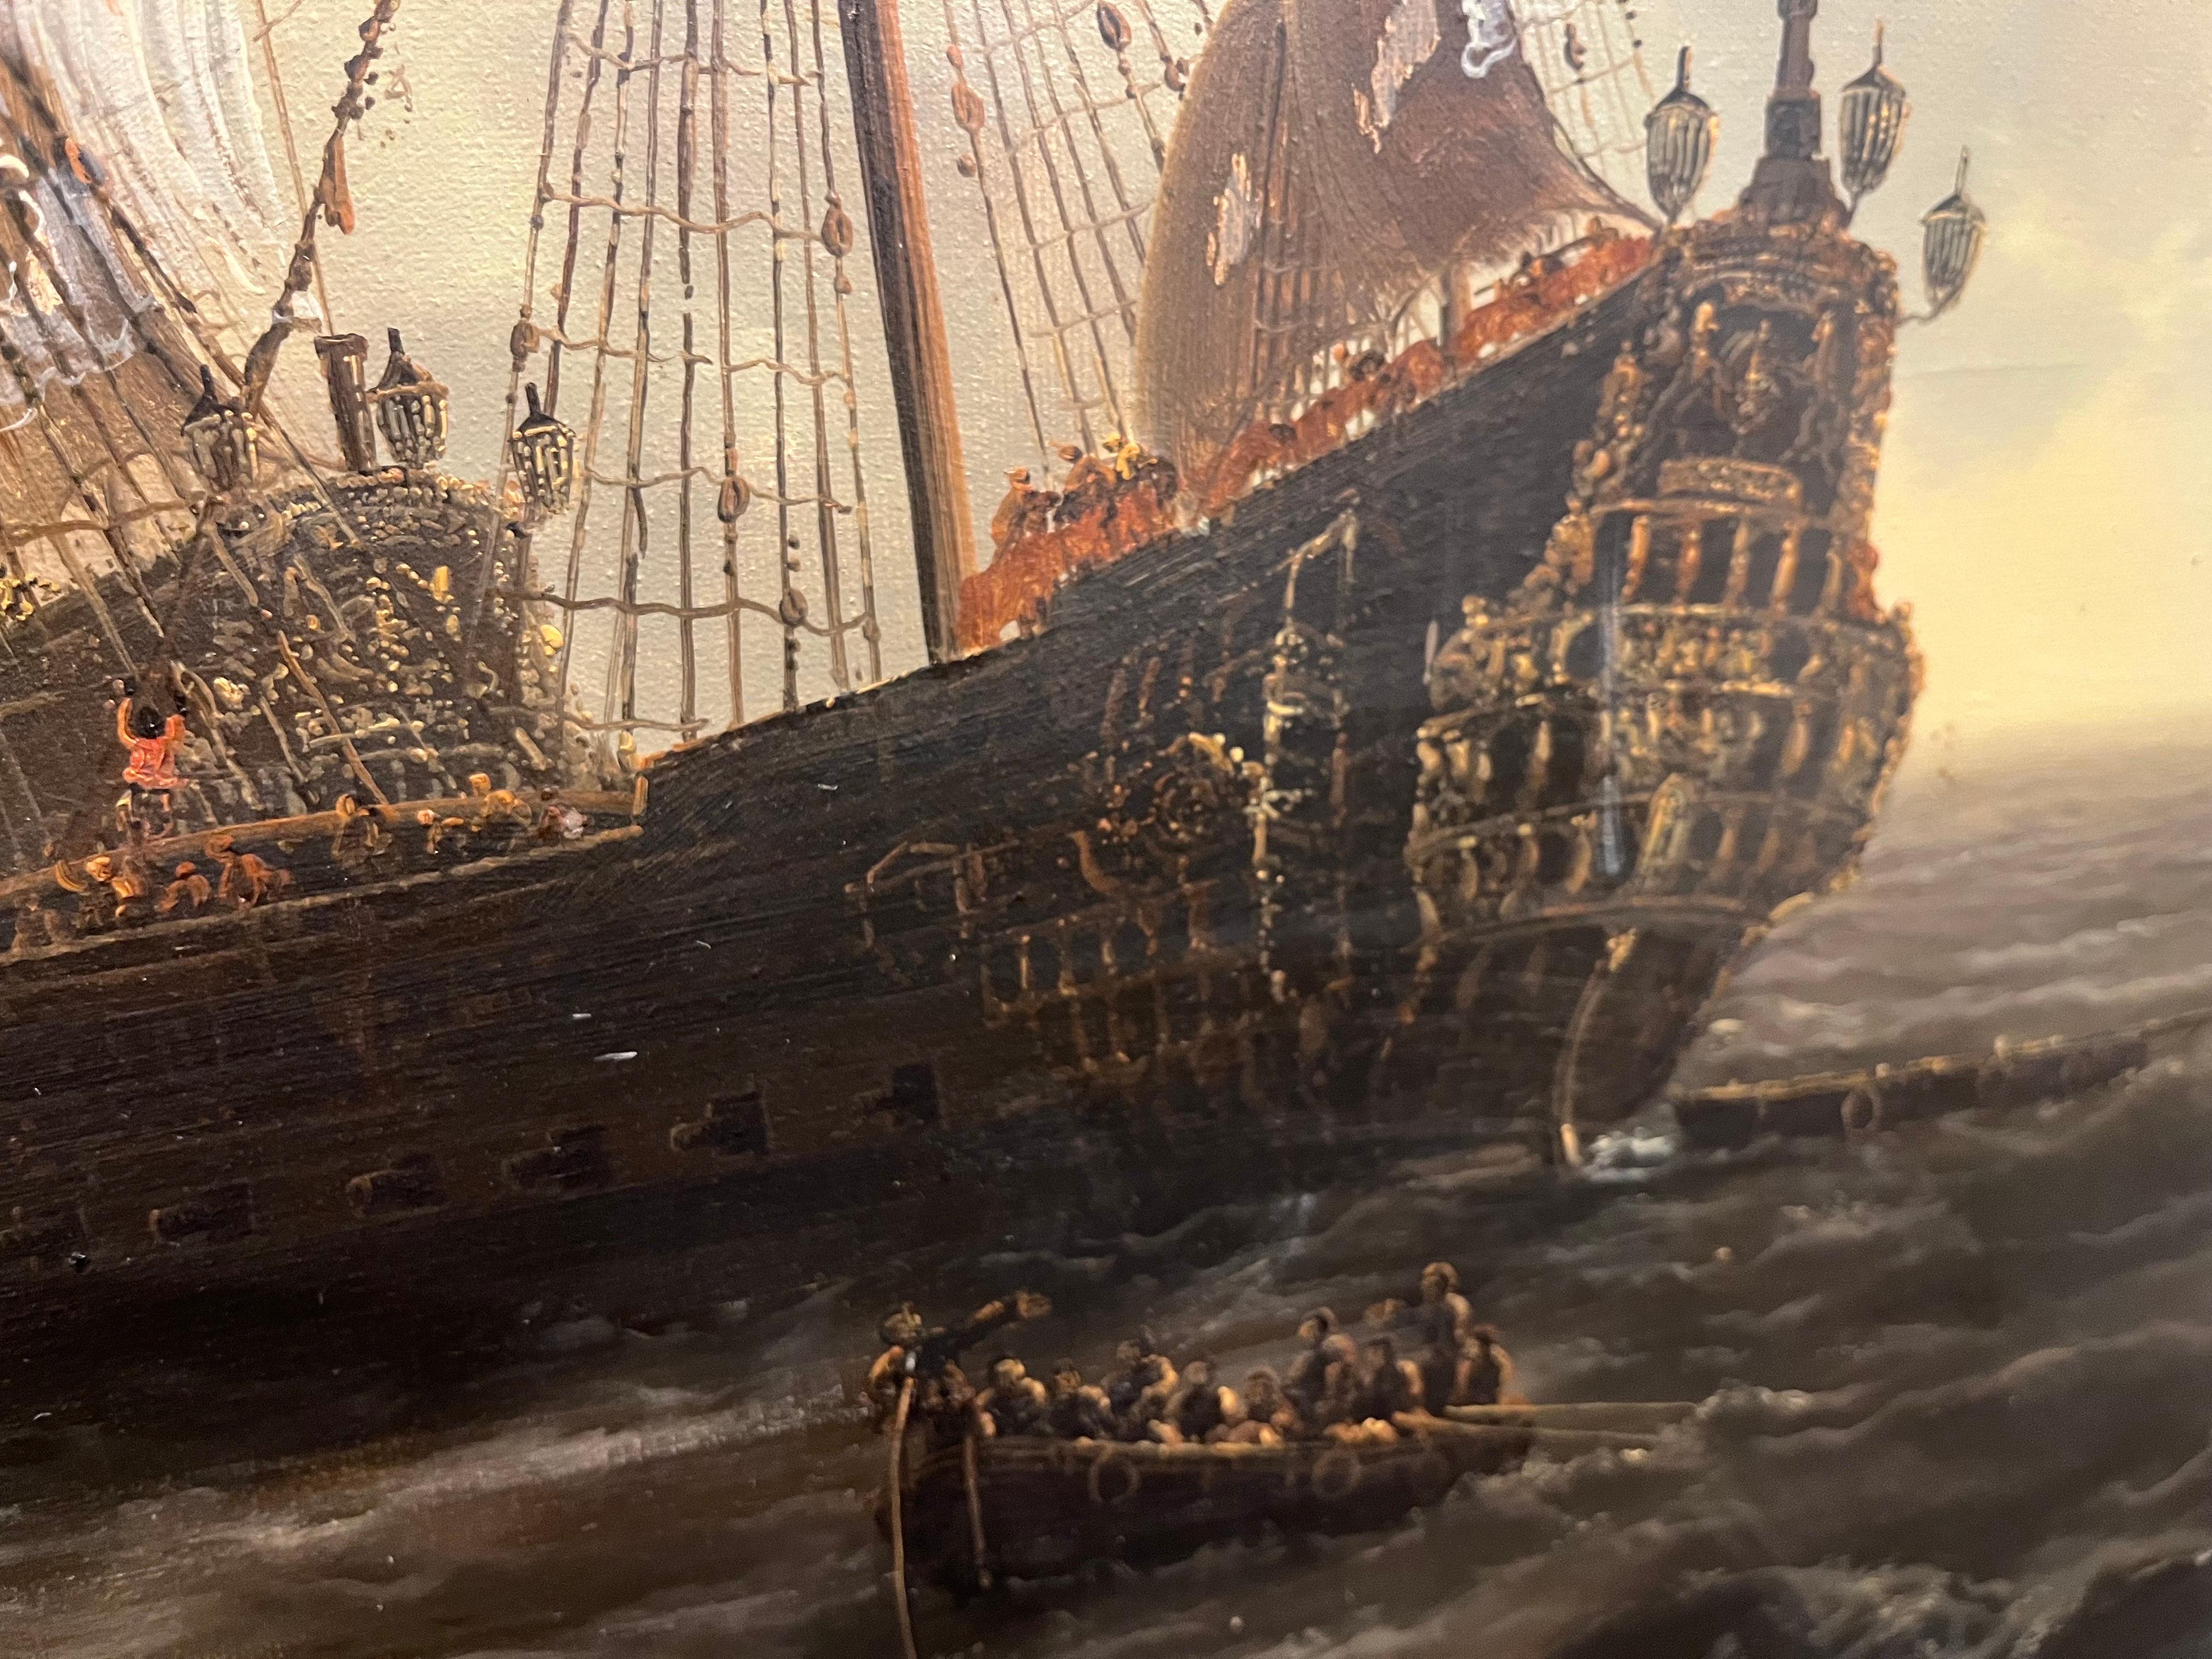 Énorme pièce de maîtresse d'un navire maritime du 20e siècle, FRAME en or bien conservée - Impressionnisme Painting par E ponthier